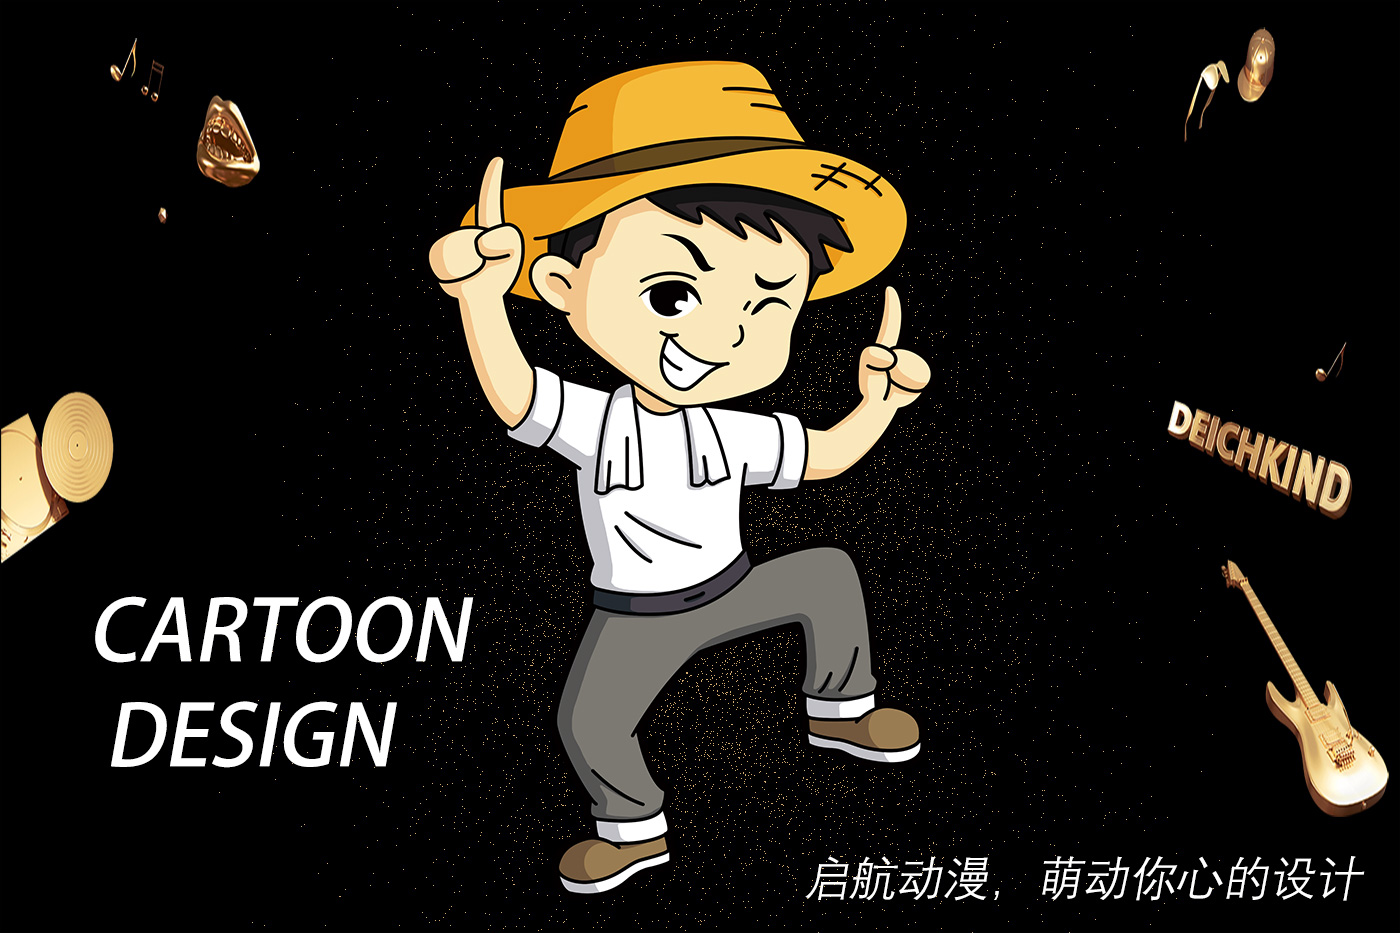 【原创】3D建模卡通IP形象吉祥物商标宣传四格漫画插画手绘